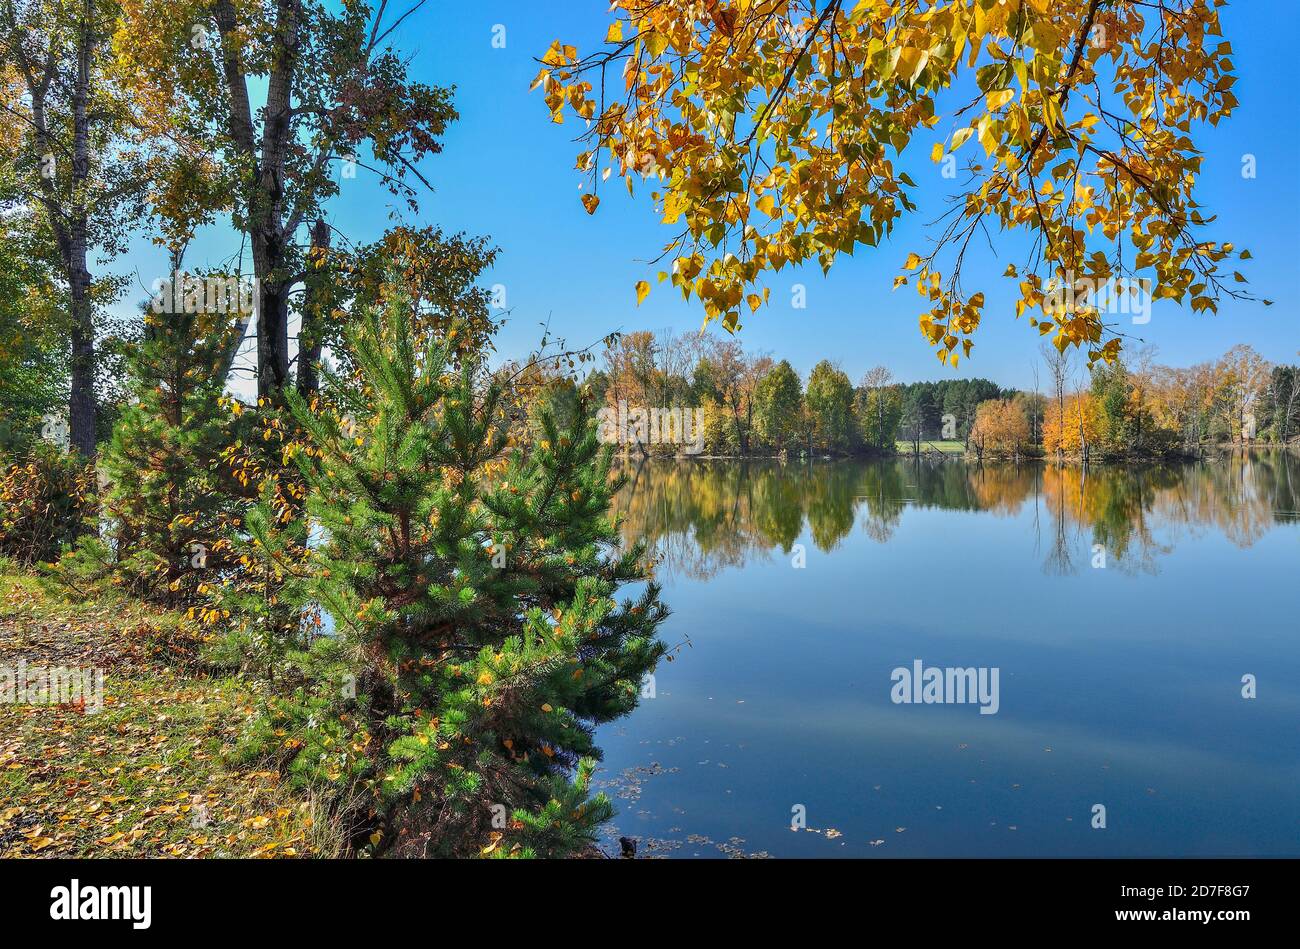 Goldenes Laub von Herbstbäumen und grünen Fichten um die see spiegelt sich in blauem Wasser - Herbst malerische Landschaft bei Warmes sonniges septemberwetter Stockfoto